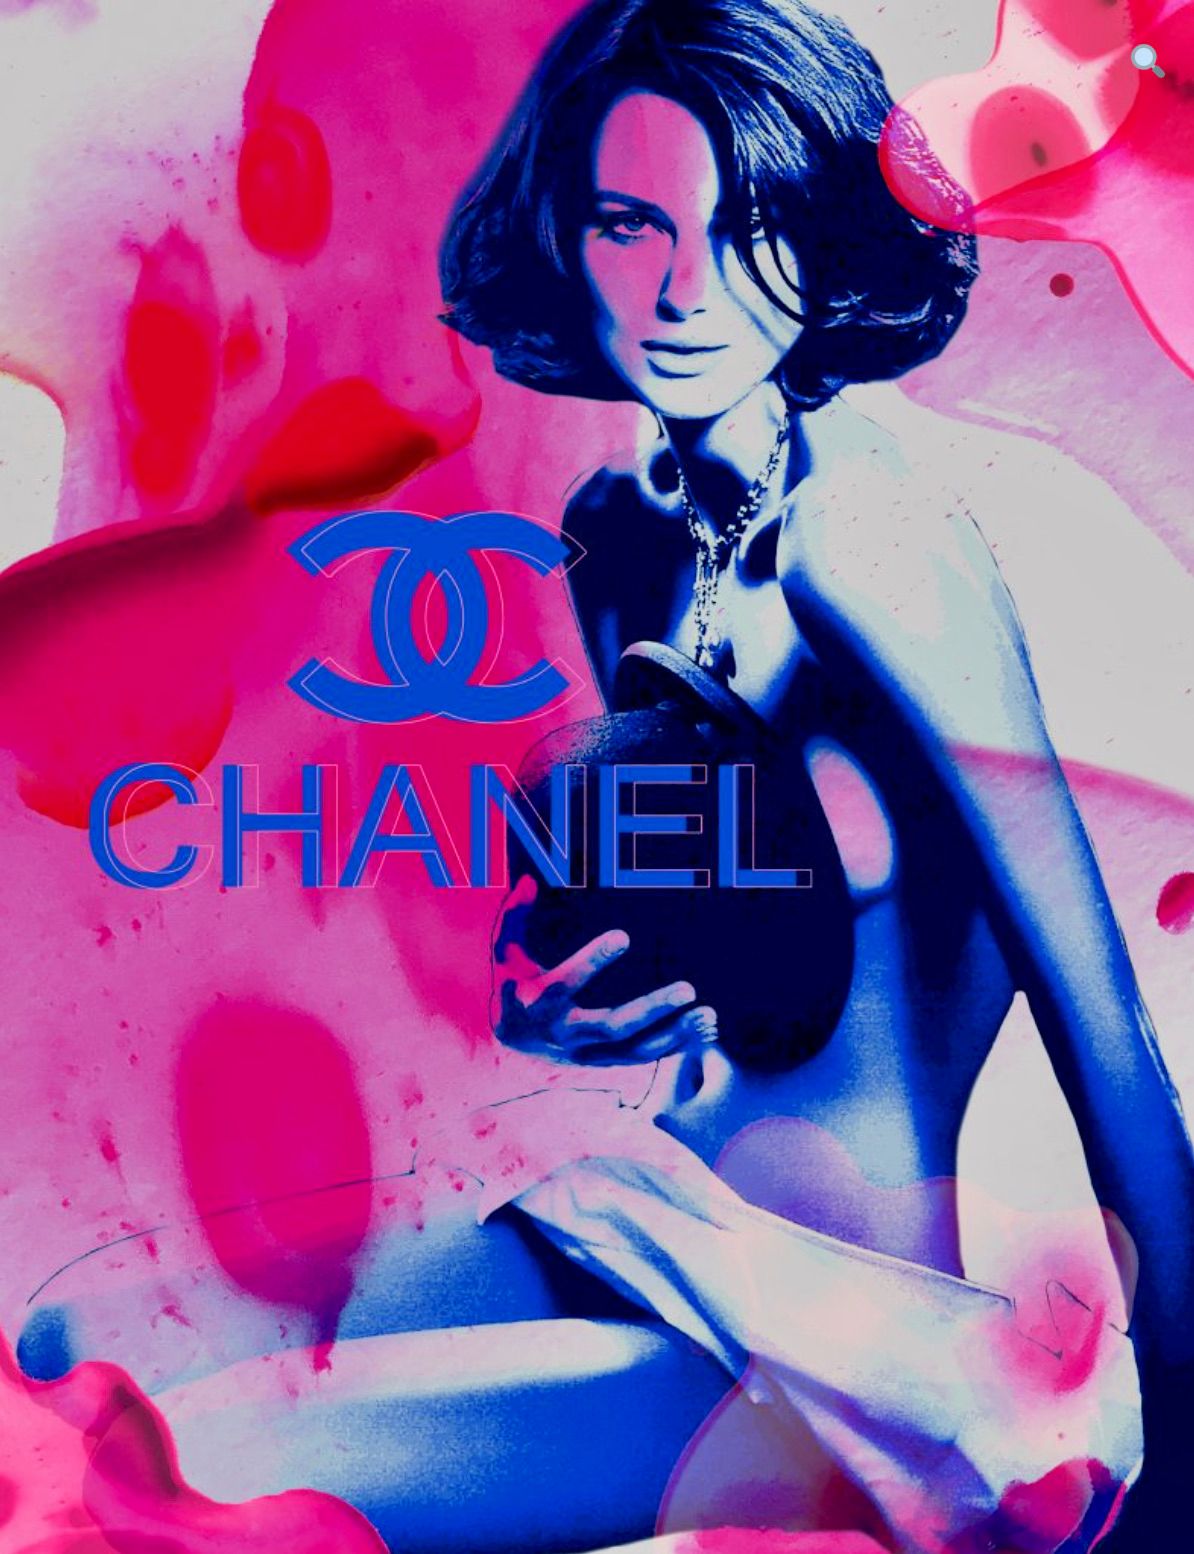 Nathali von Kretschmann collage astratto Keira Knightley nuda sovrapposizione logo Chanel colore rosa